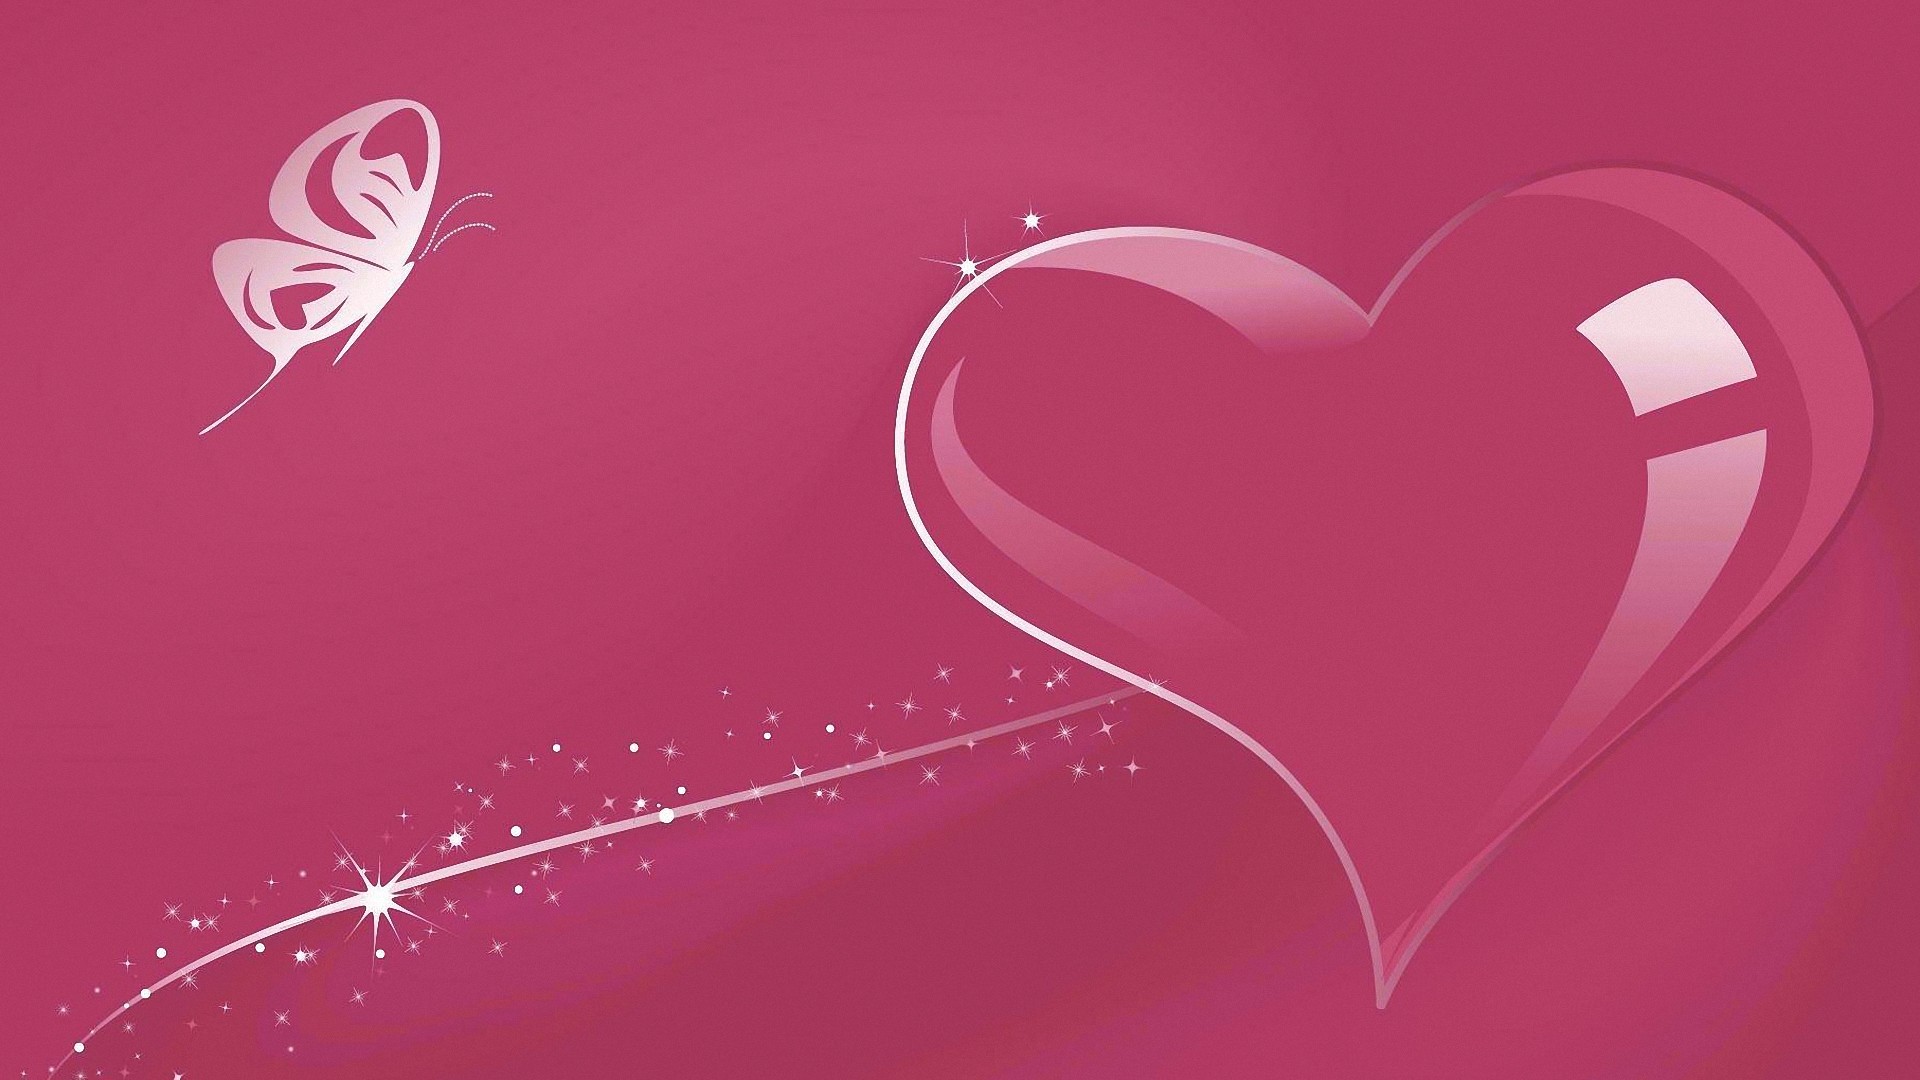 フルhd愛の壁紙,心臓,ピンク,赤,愛,バレンタイン・デー